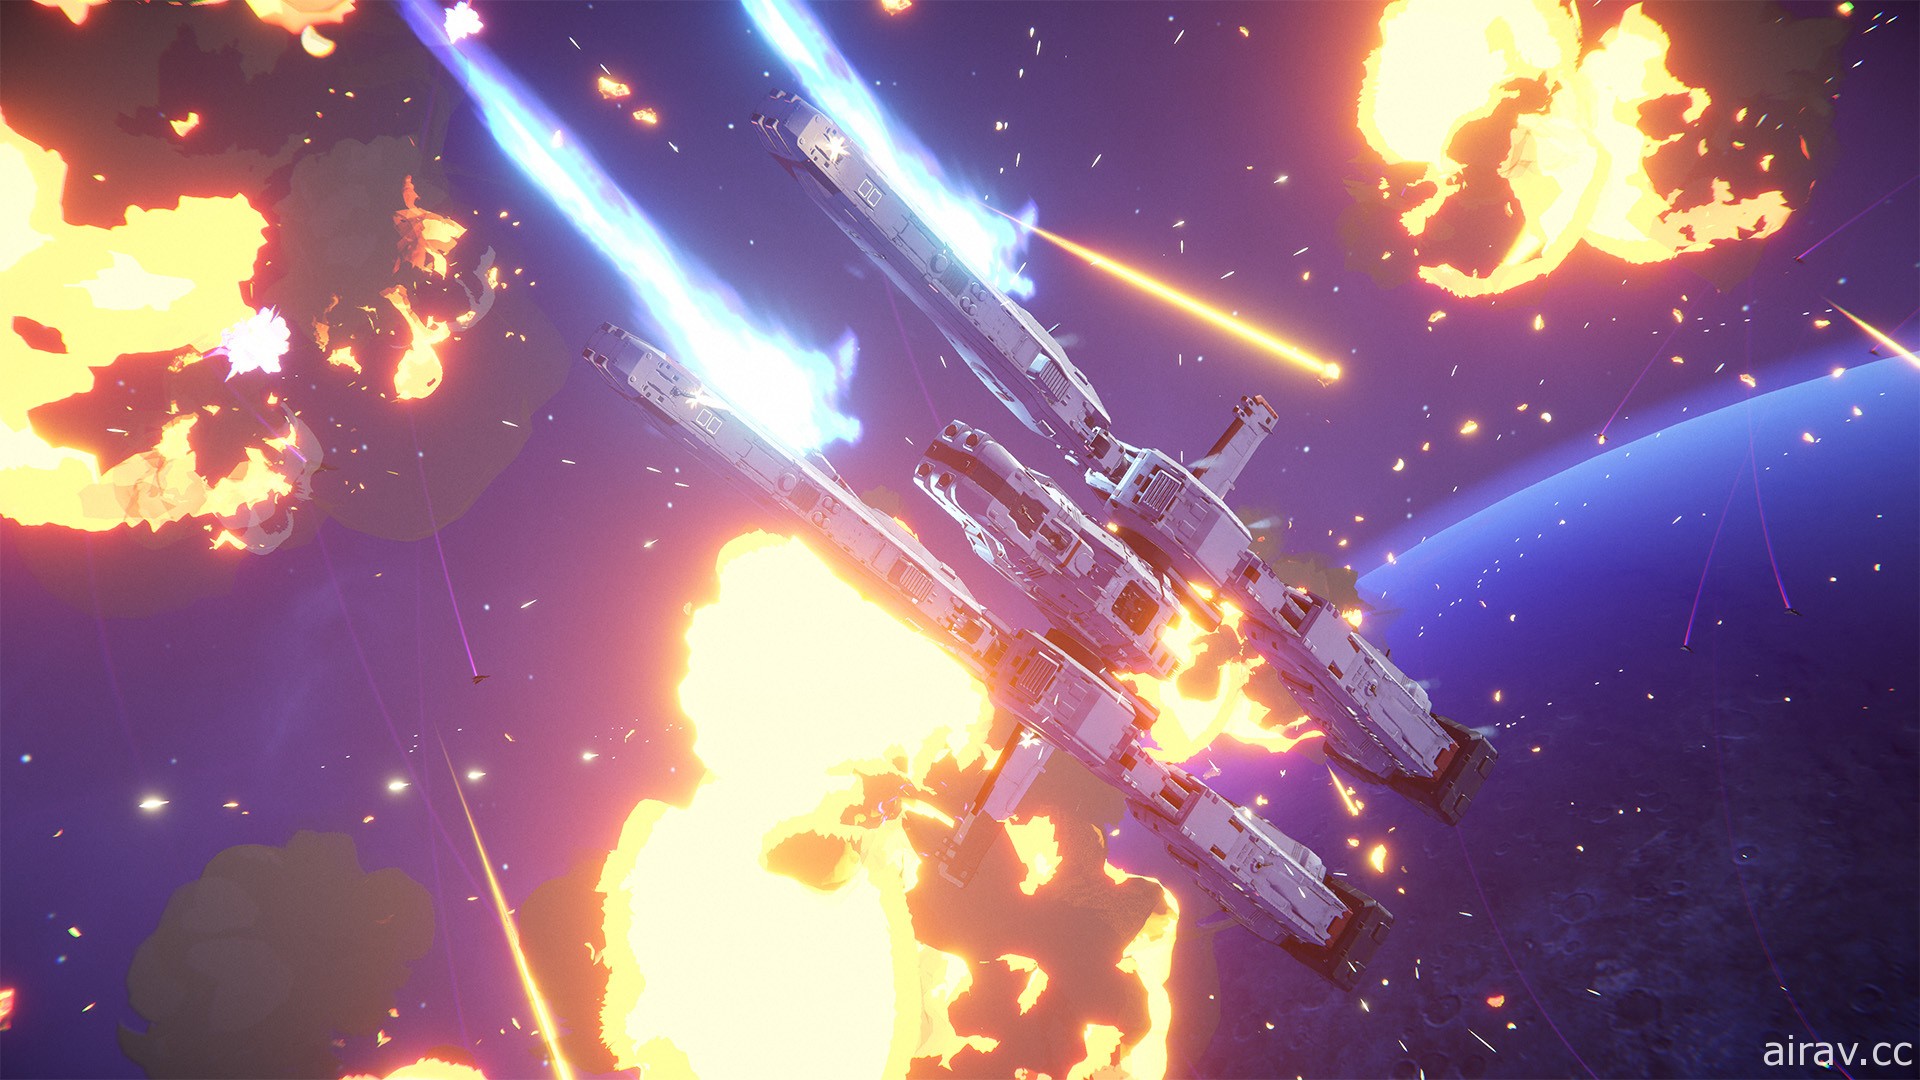 科幻线上即时战略游戏《无限舰队》公开新预告影片“全面反击” 揭露主要游玩要素